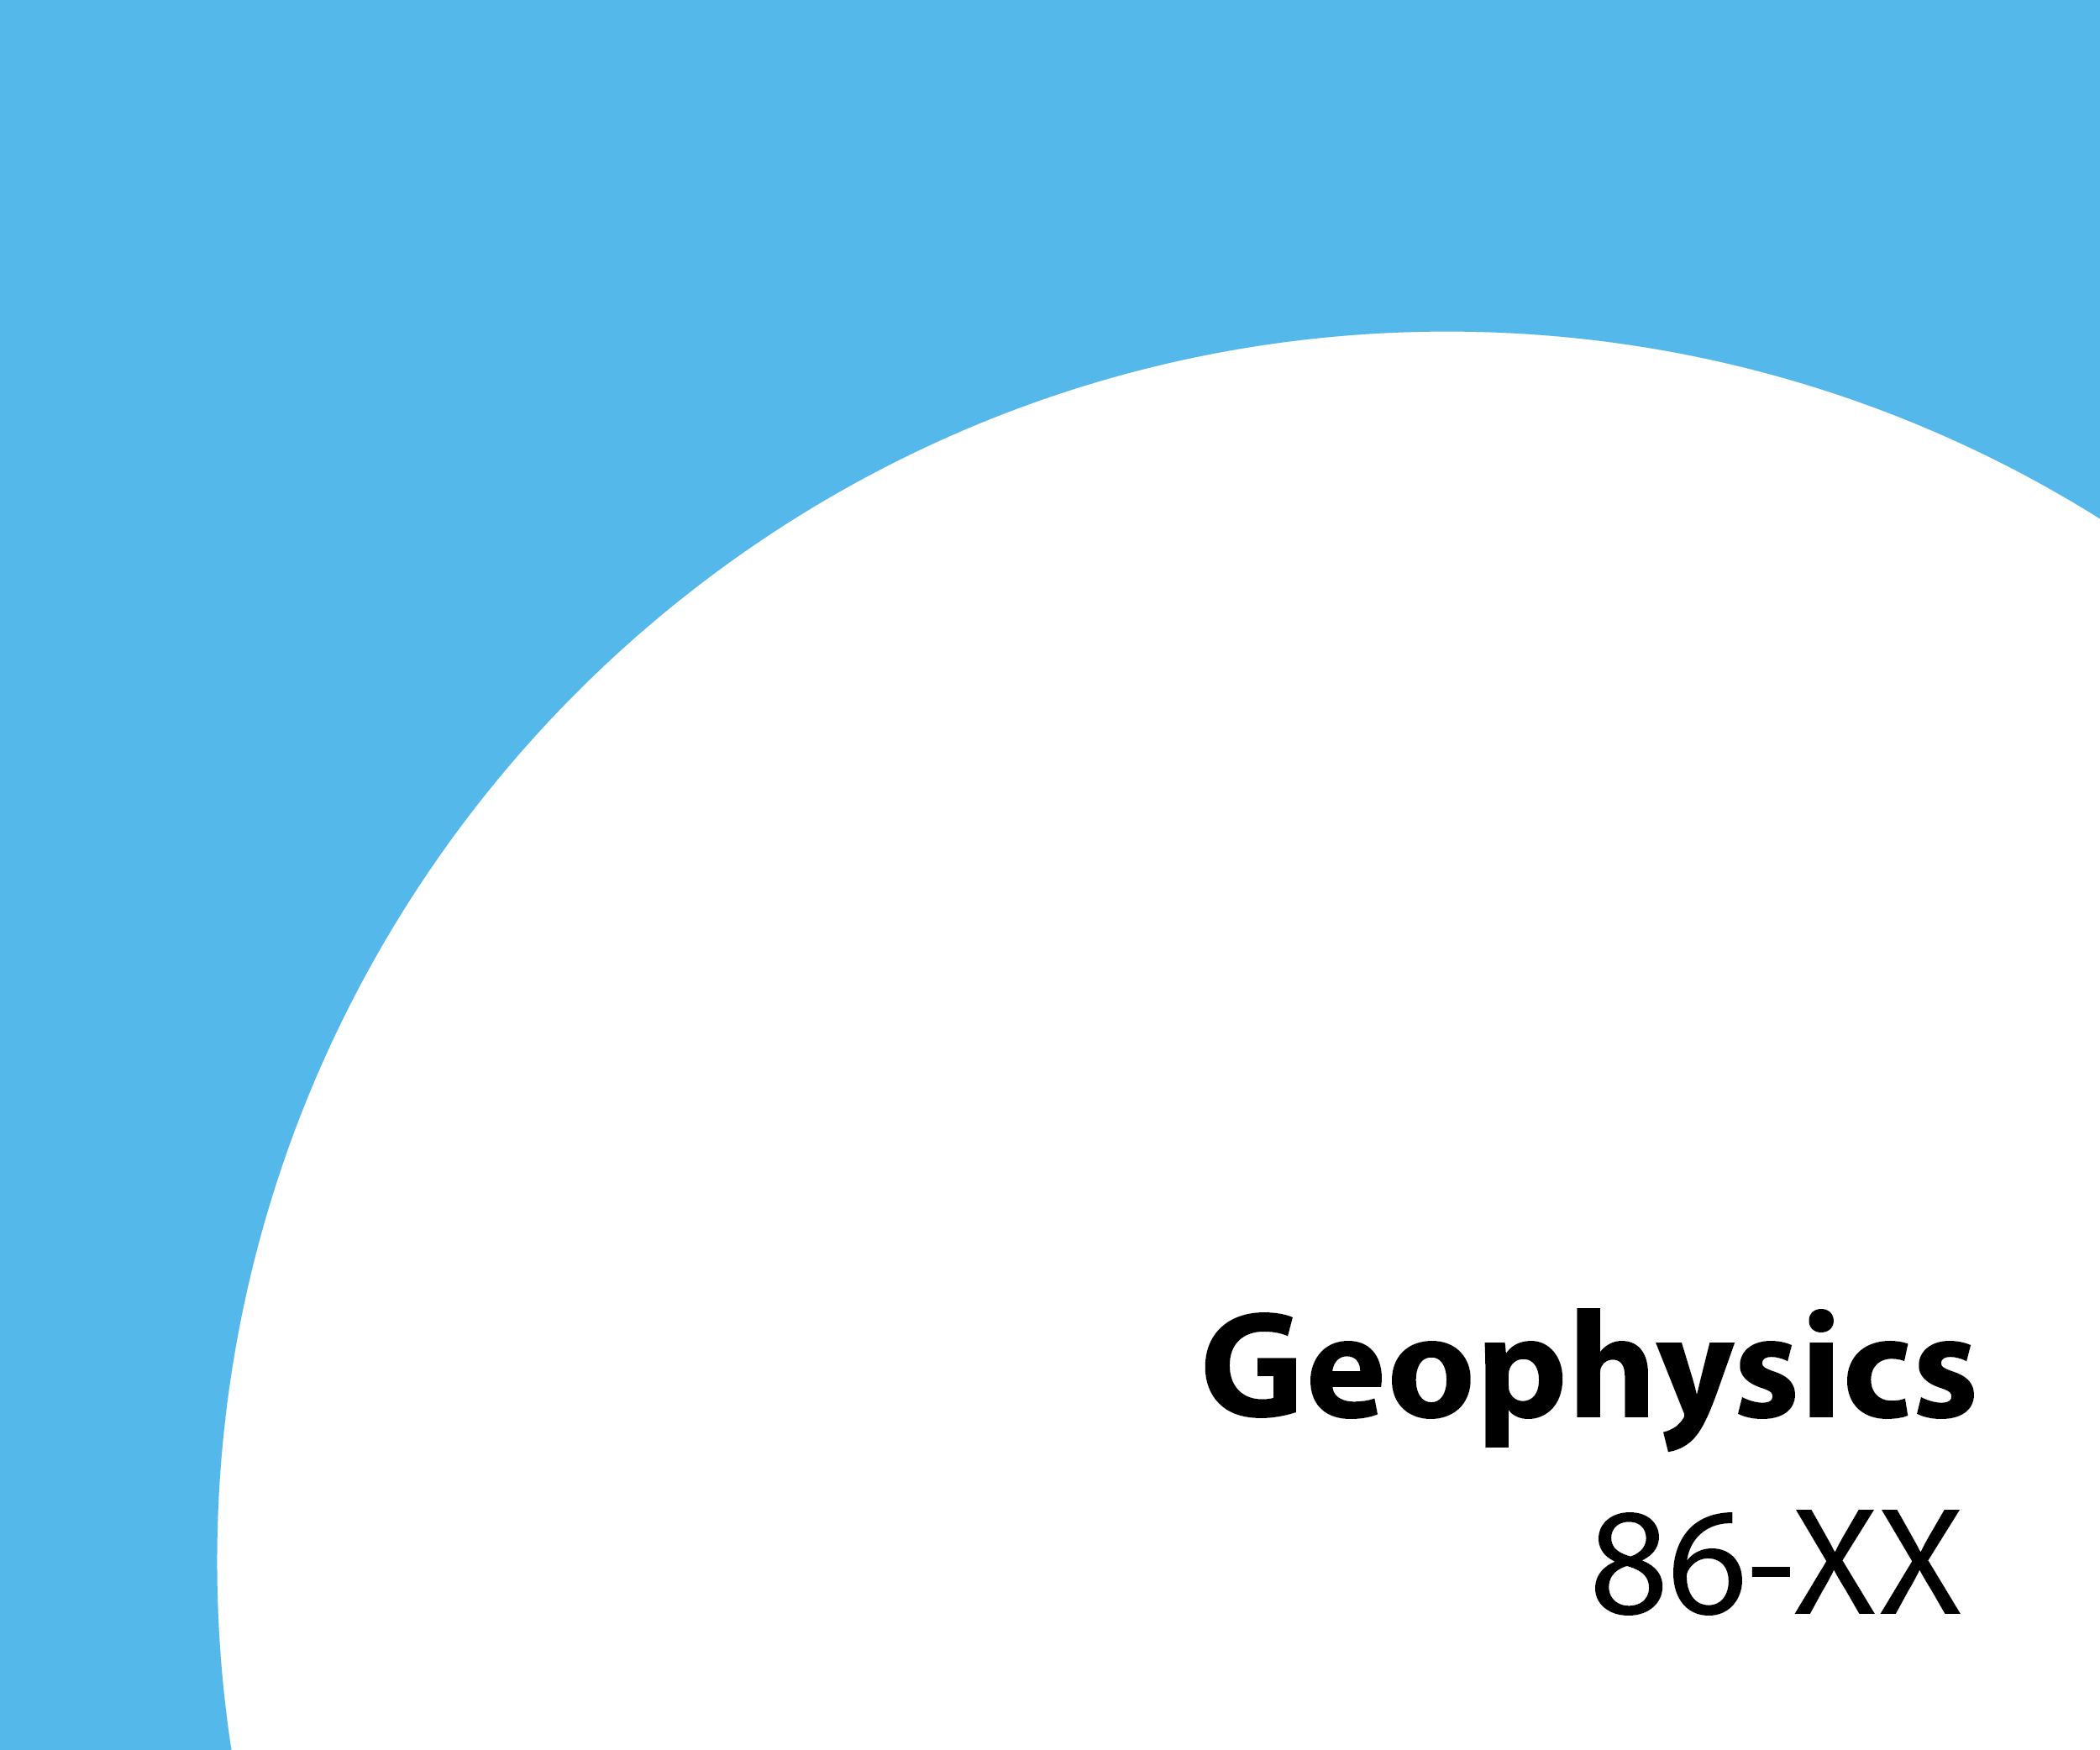 86-xx Geophysics